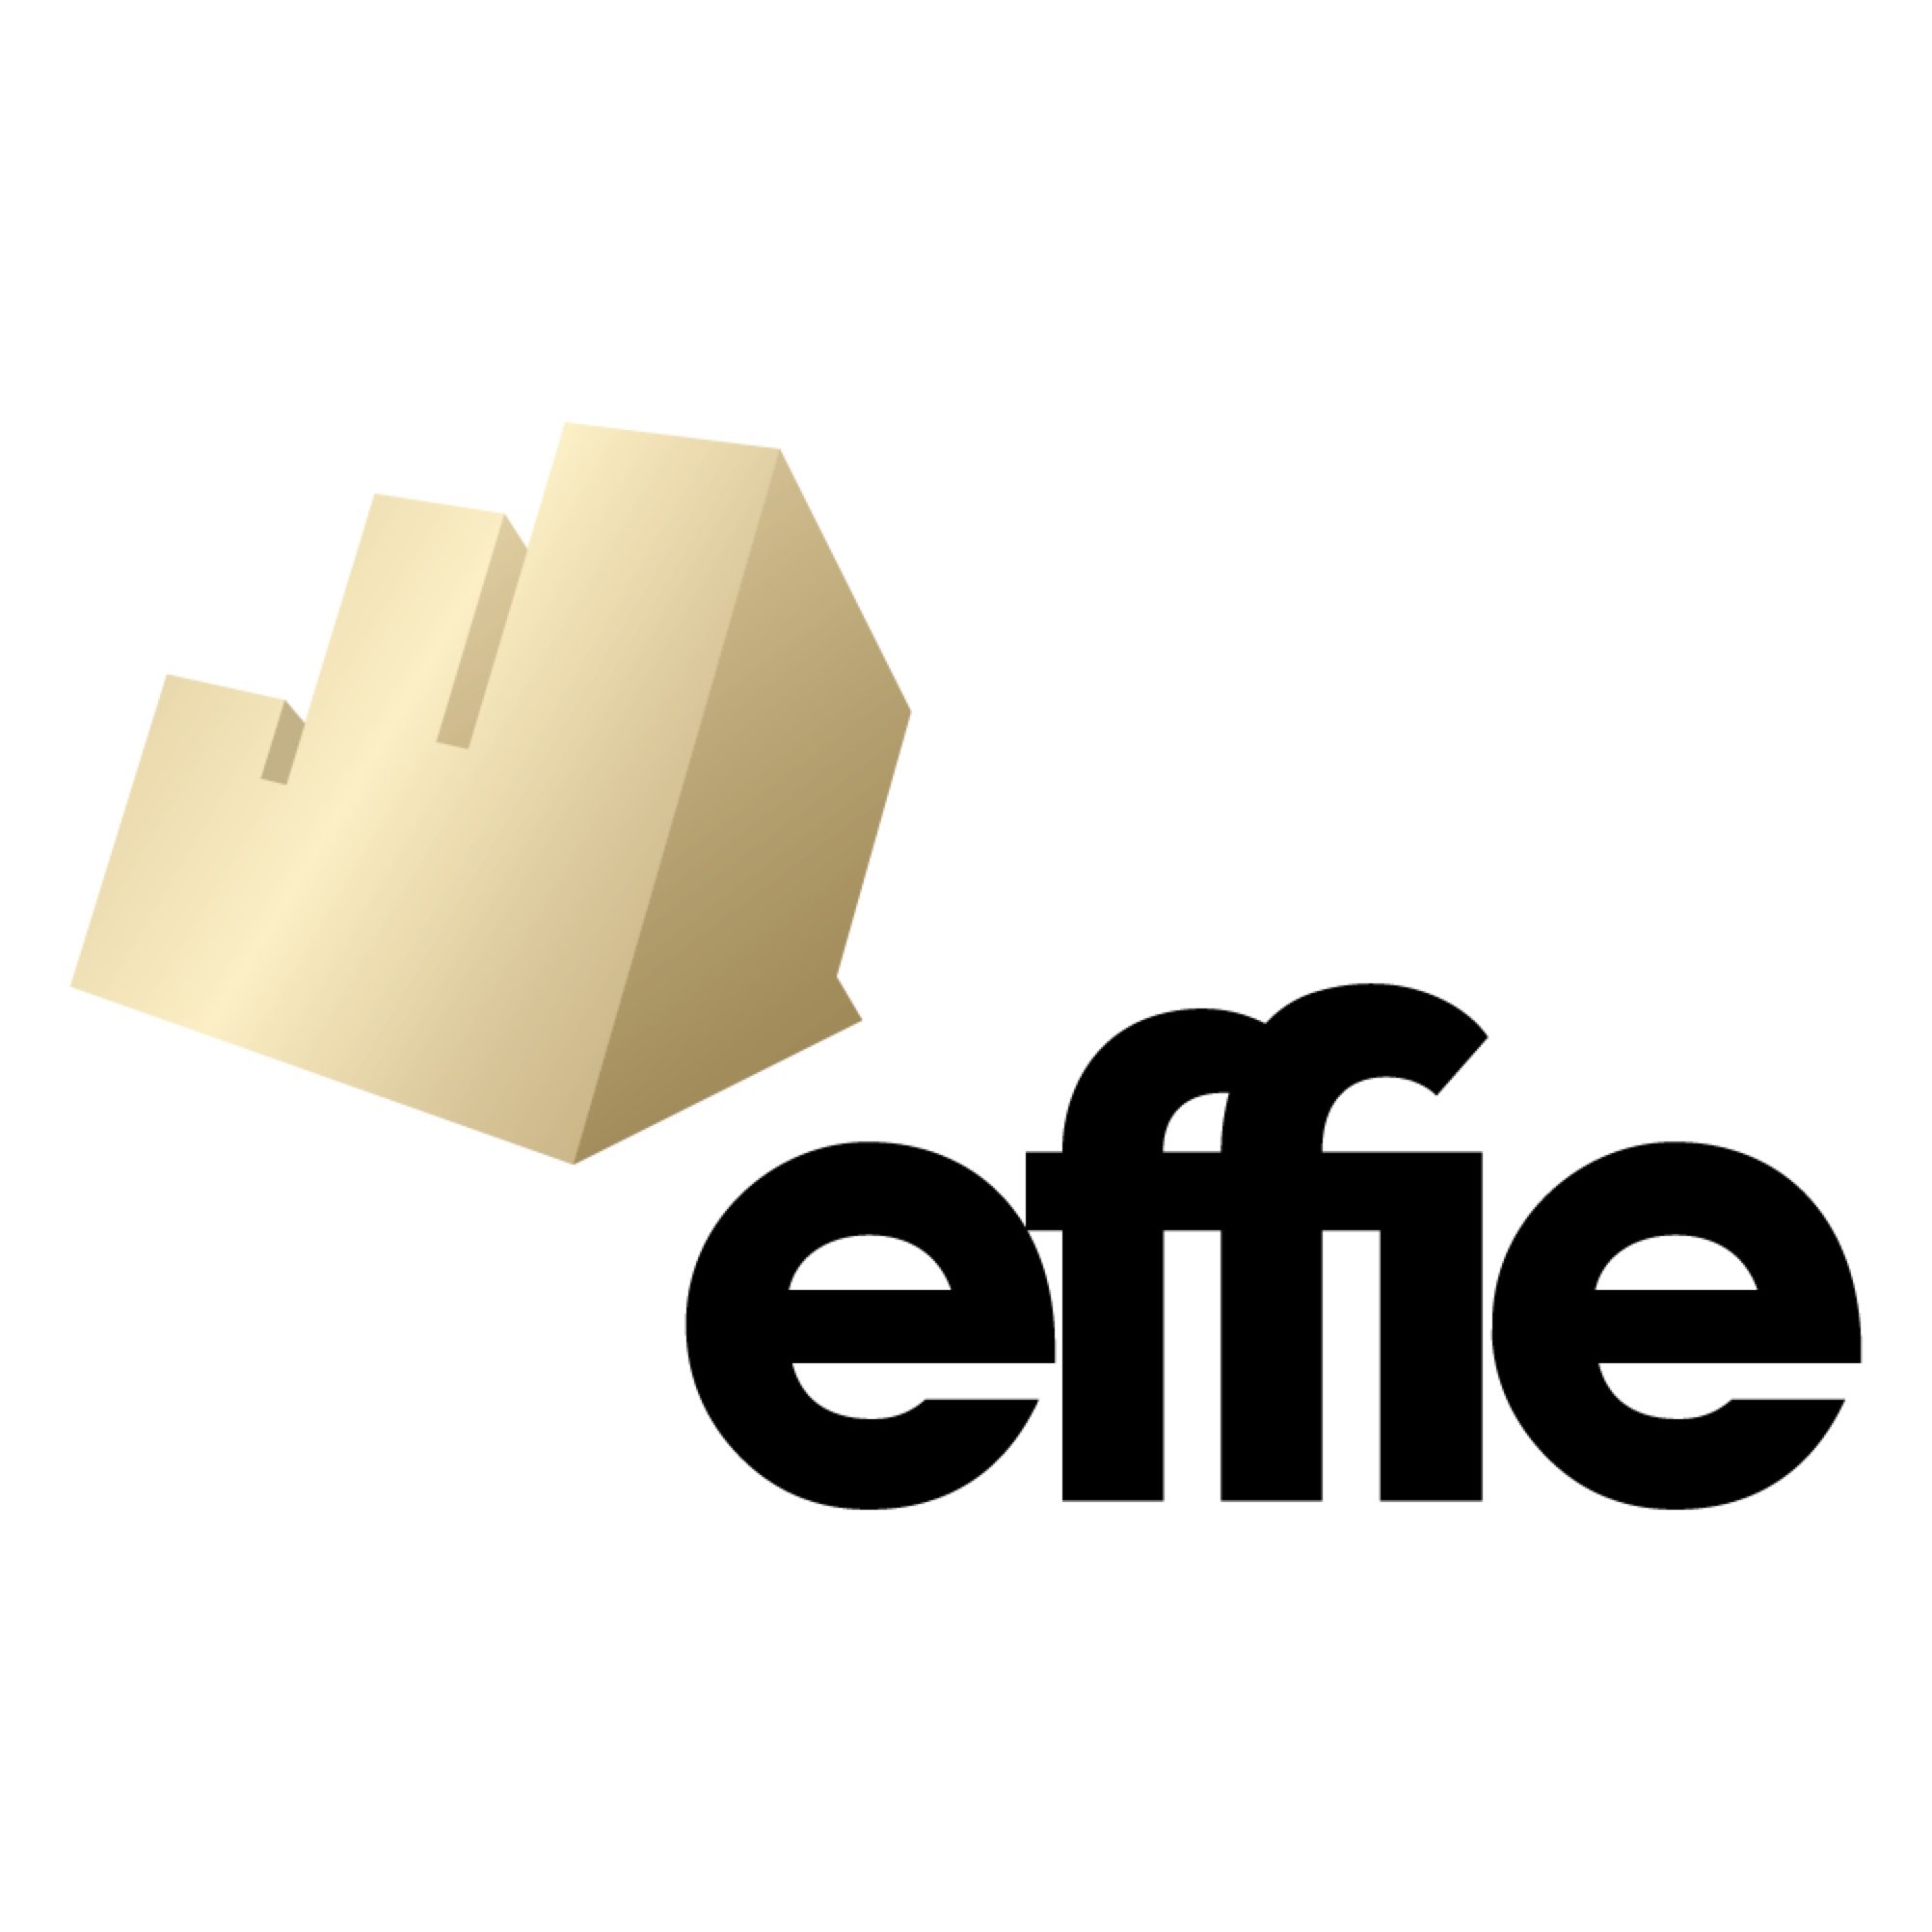 effie_new_logo-8d050b98e4d86a0d3aa9955aafc0b1e0.jpg